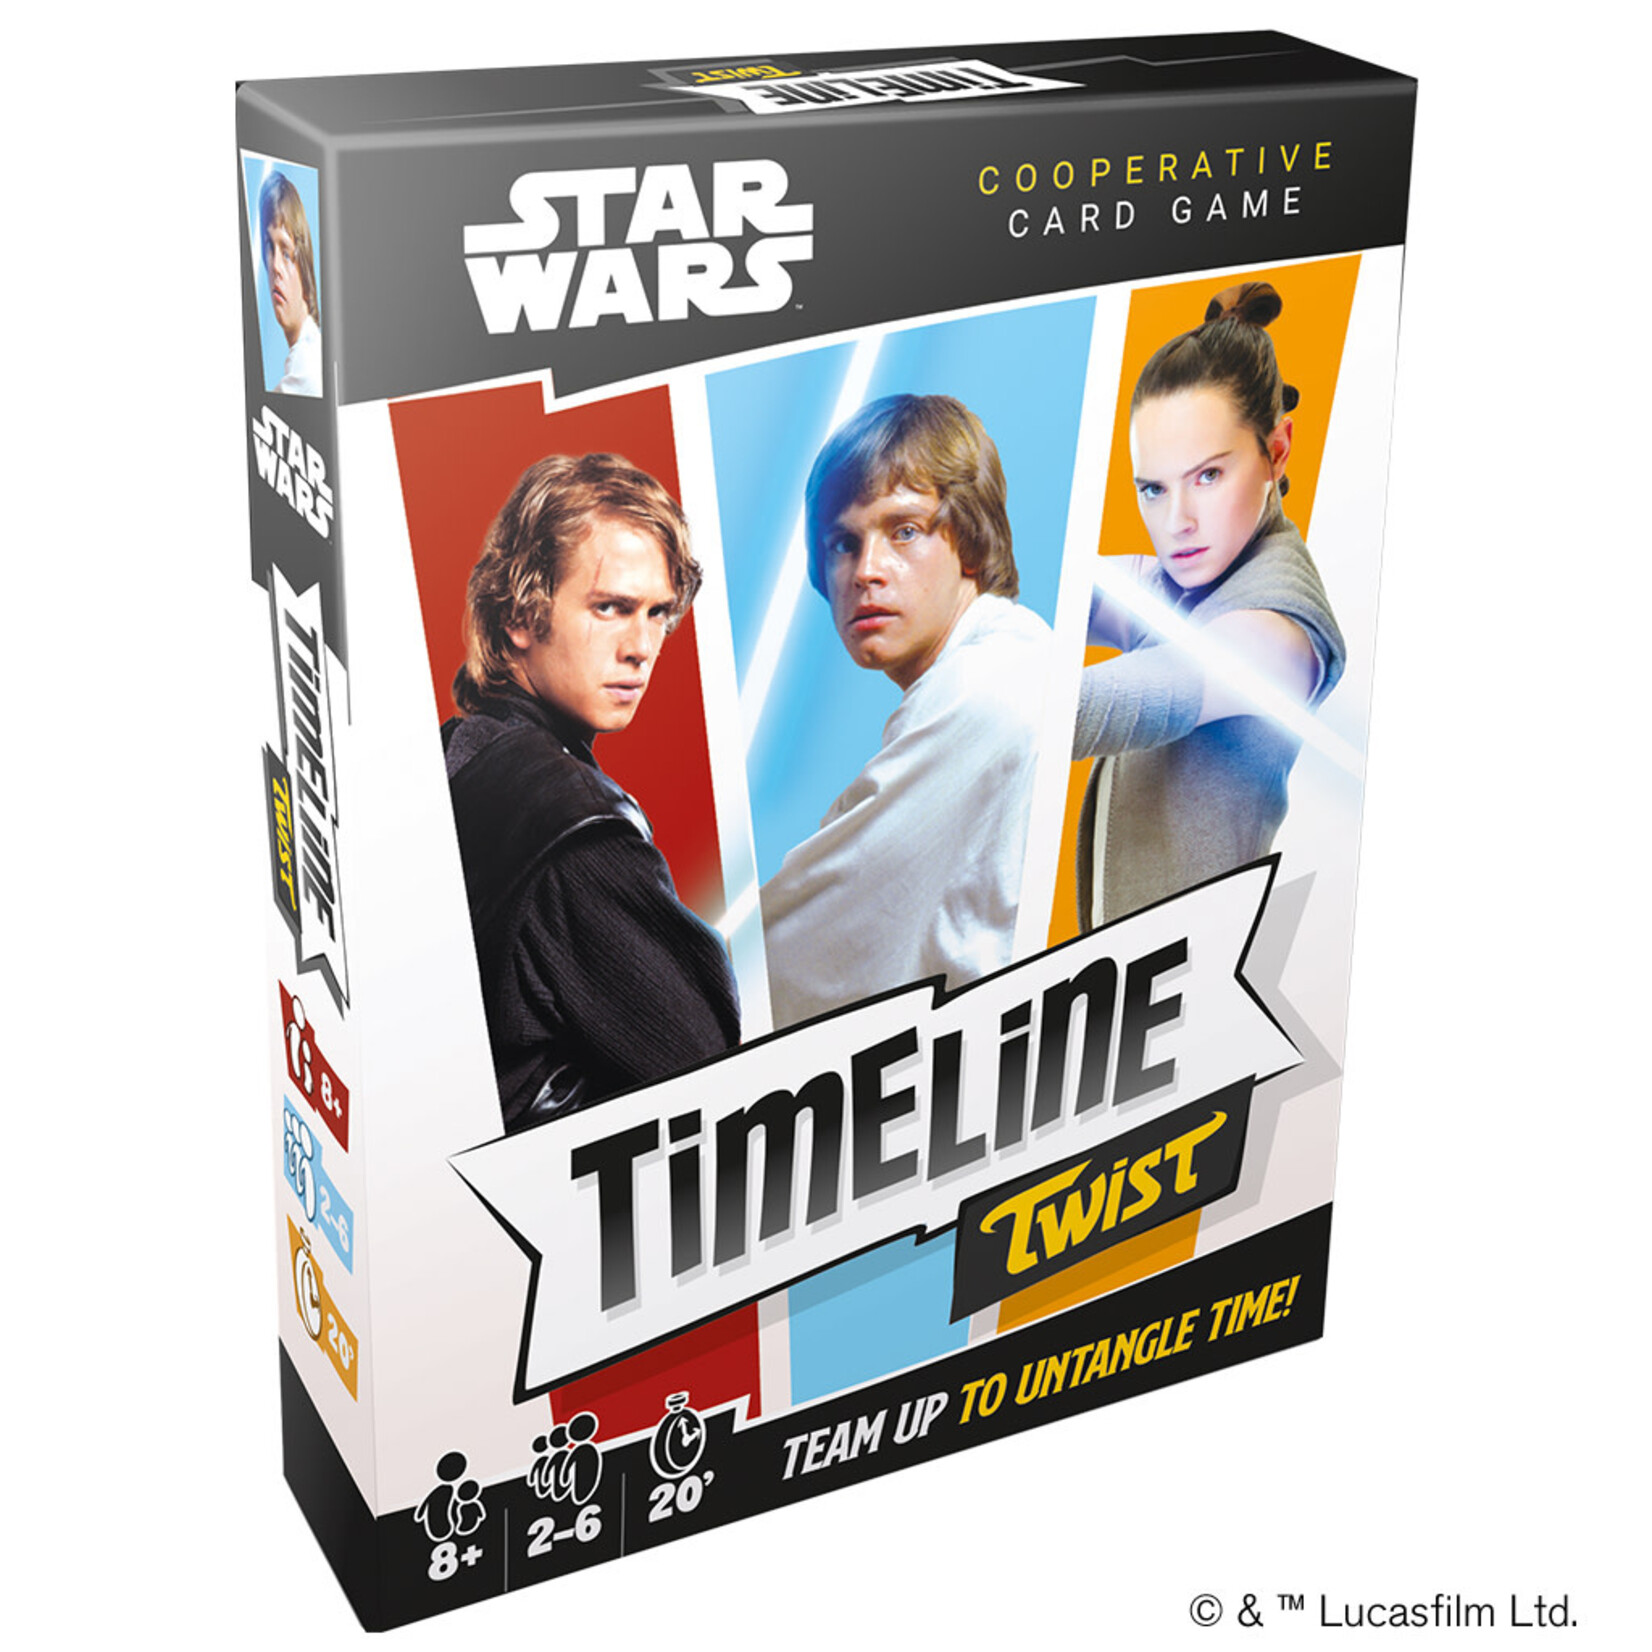 Zygomatic Timeline Twist: Star Wars